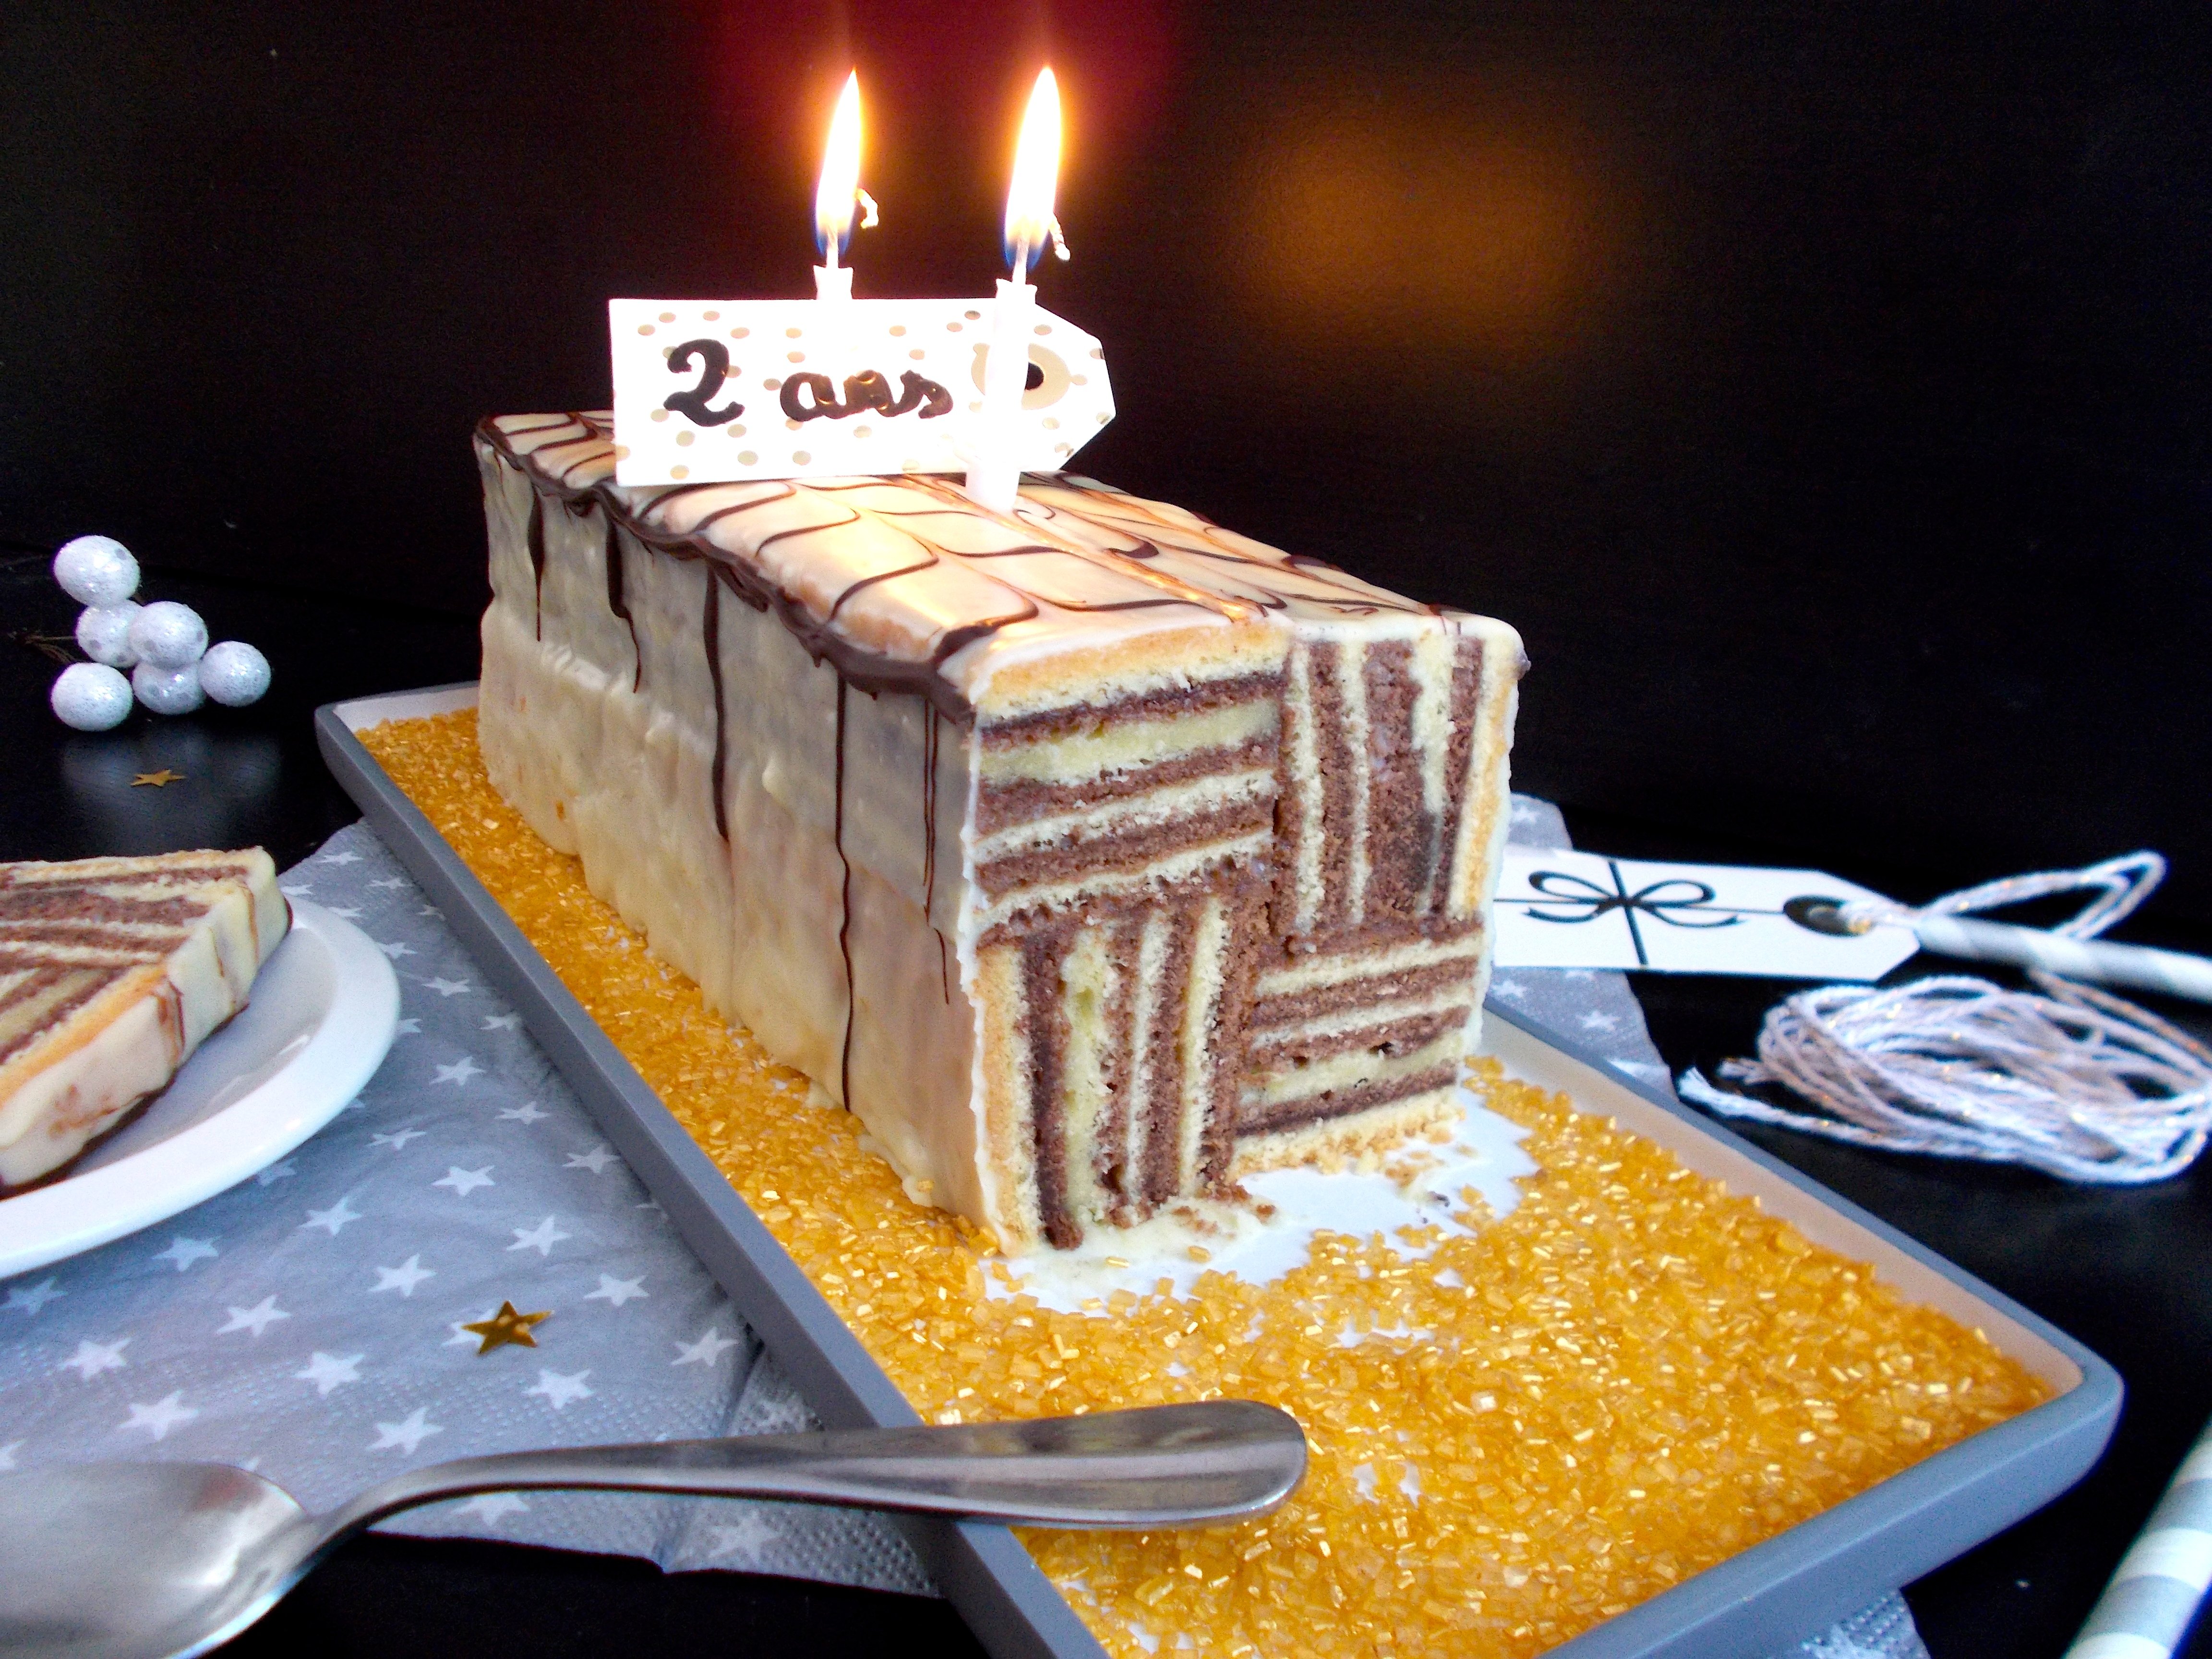 Mondrian Cake : Les 2 ans du blog !